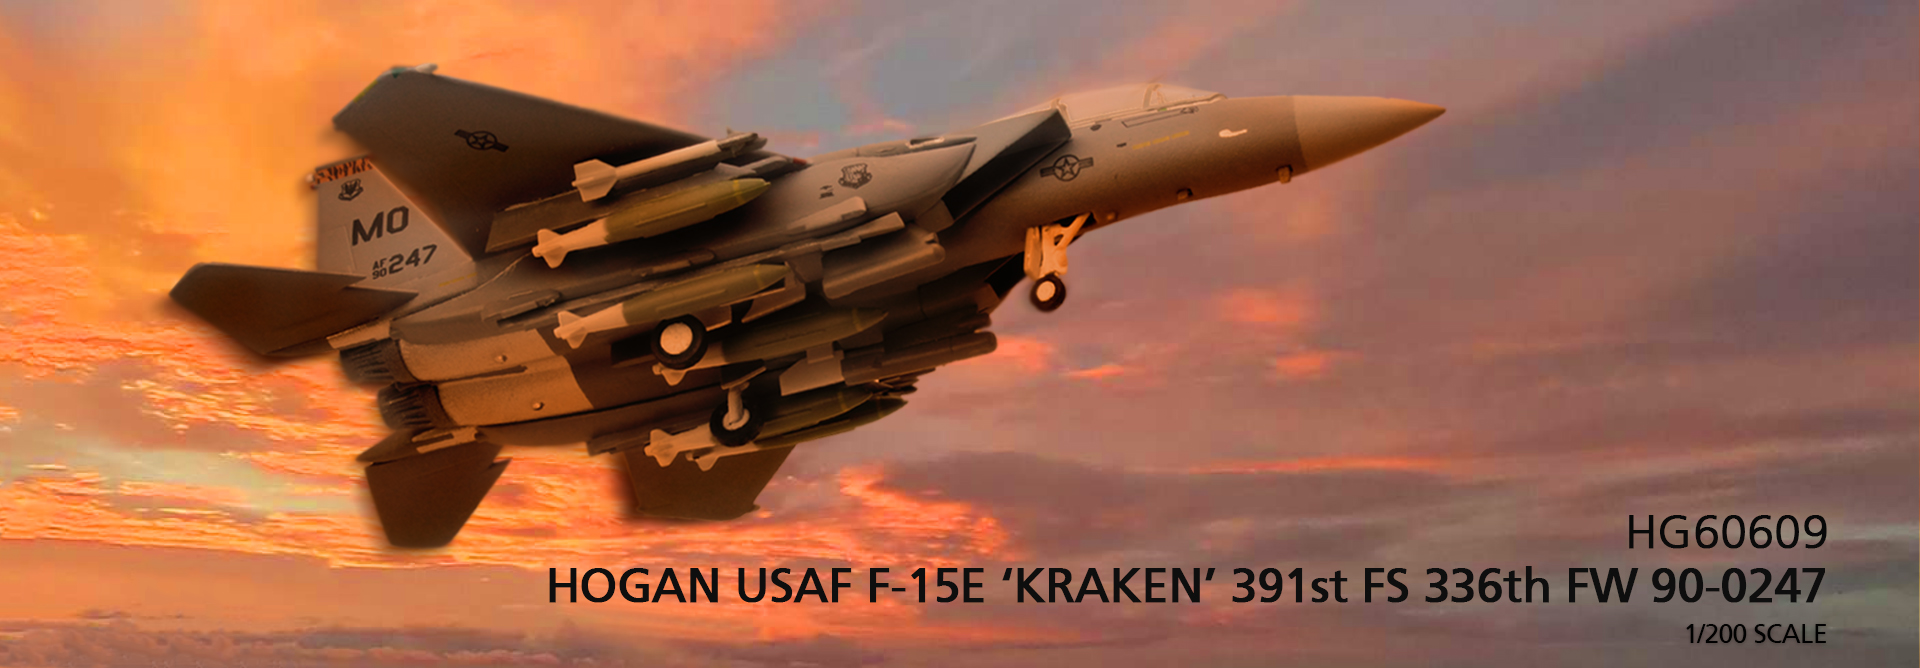 HG60609 USAF F-15E ‘KRAKEN’ 391st FS 336th FW 90-0247 1/200 SCALE